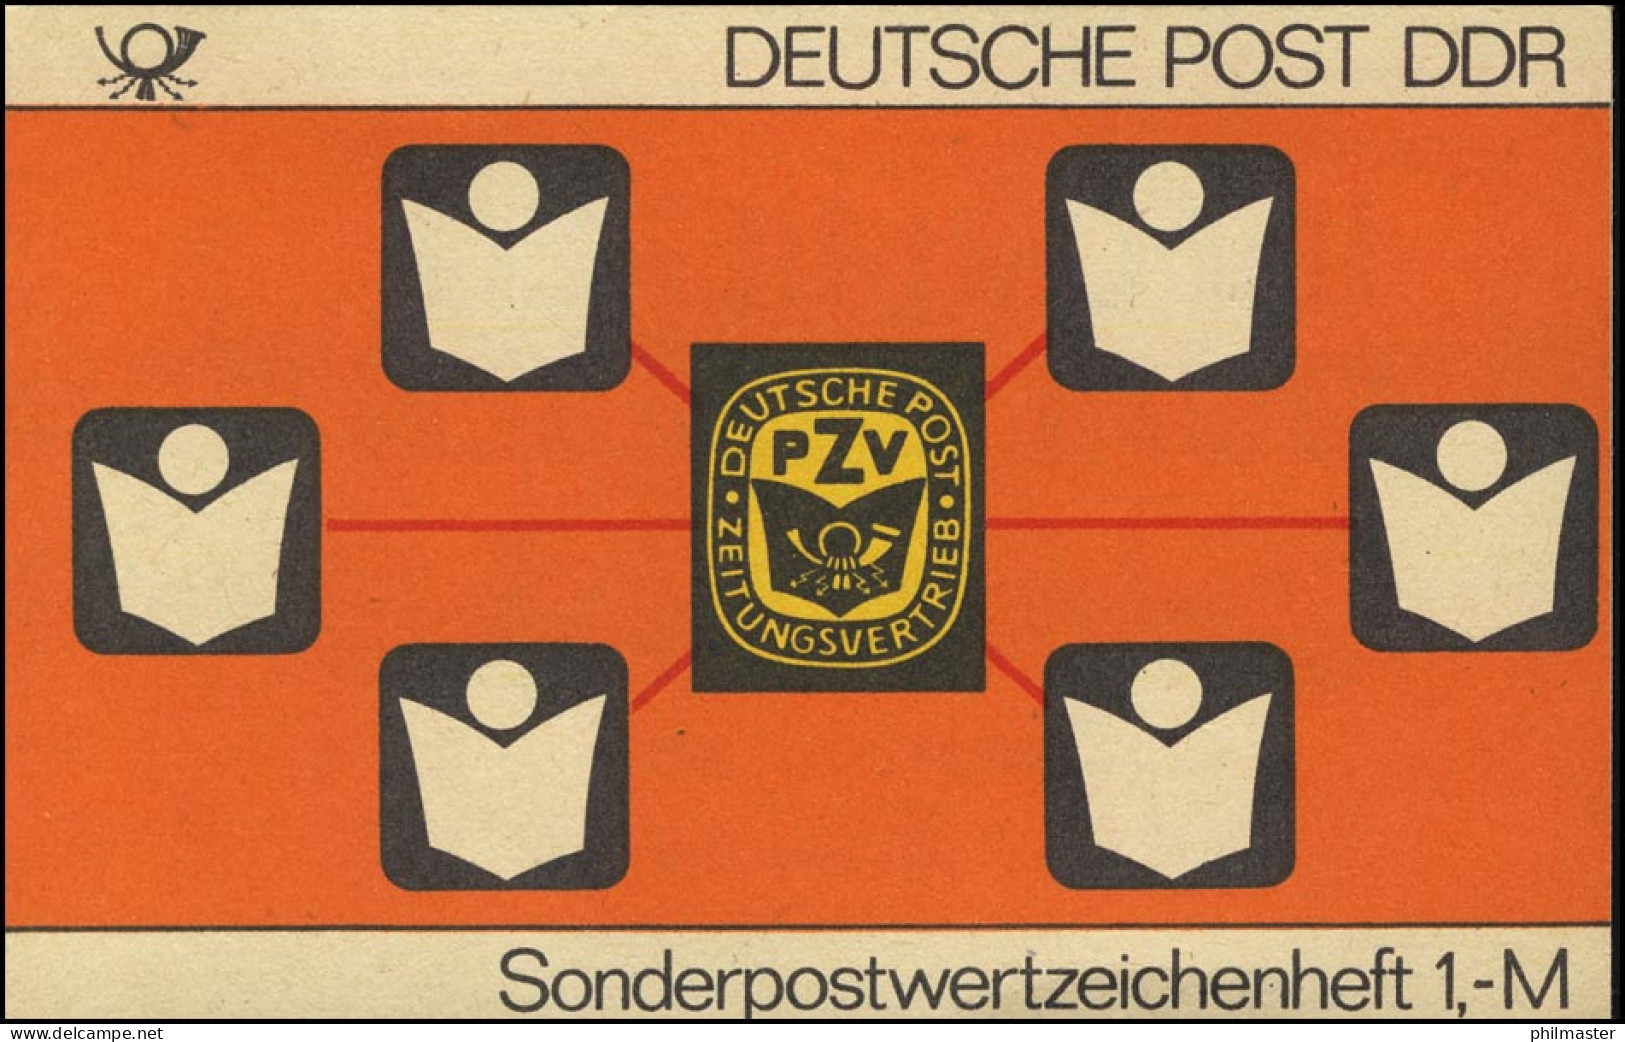 SMHD 24 A PZV Der DDR 1985 - Postfrisch - Booklets